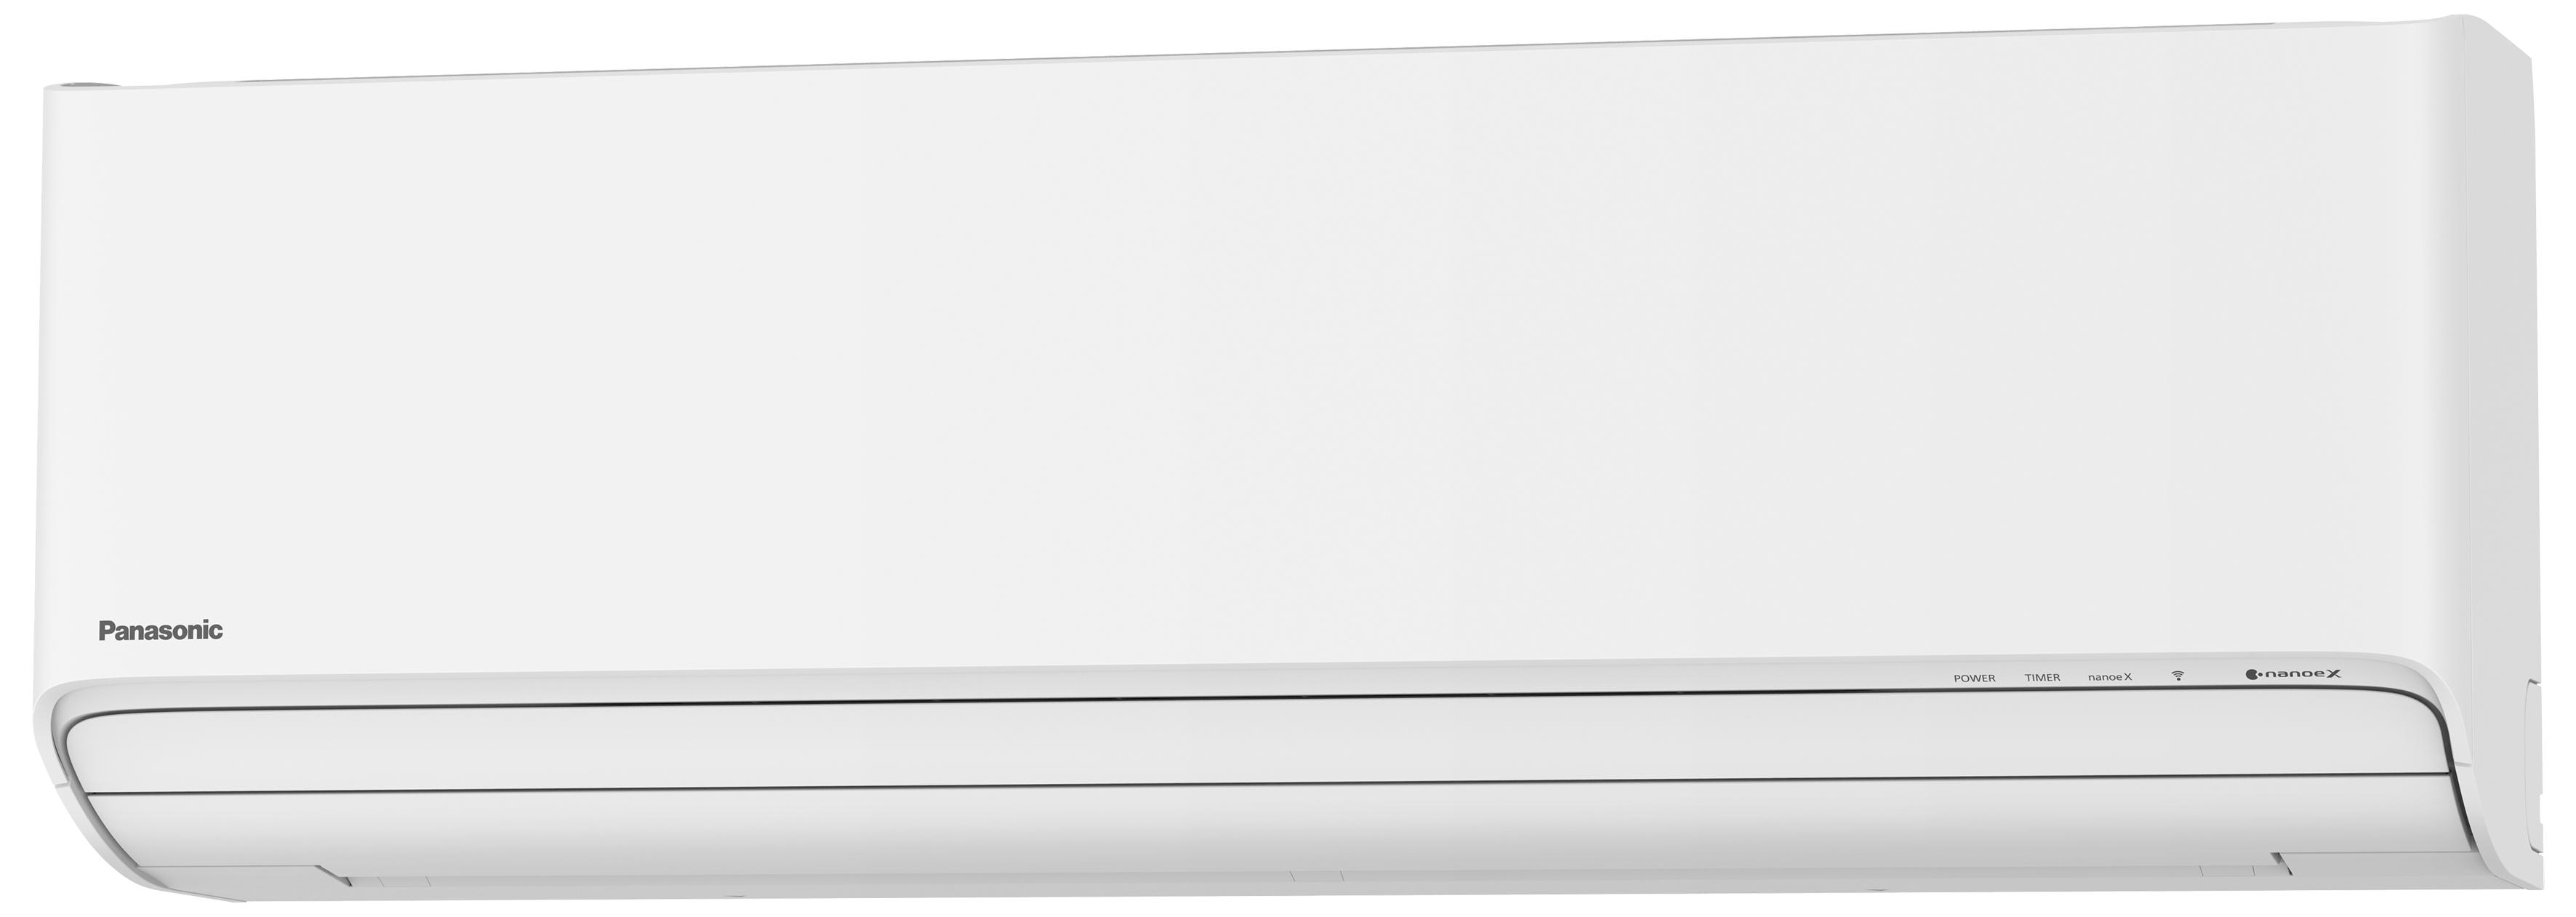 Klimatyzator Panasonic Etherea z usługą montażu dla konsumenta z 8% vat.